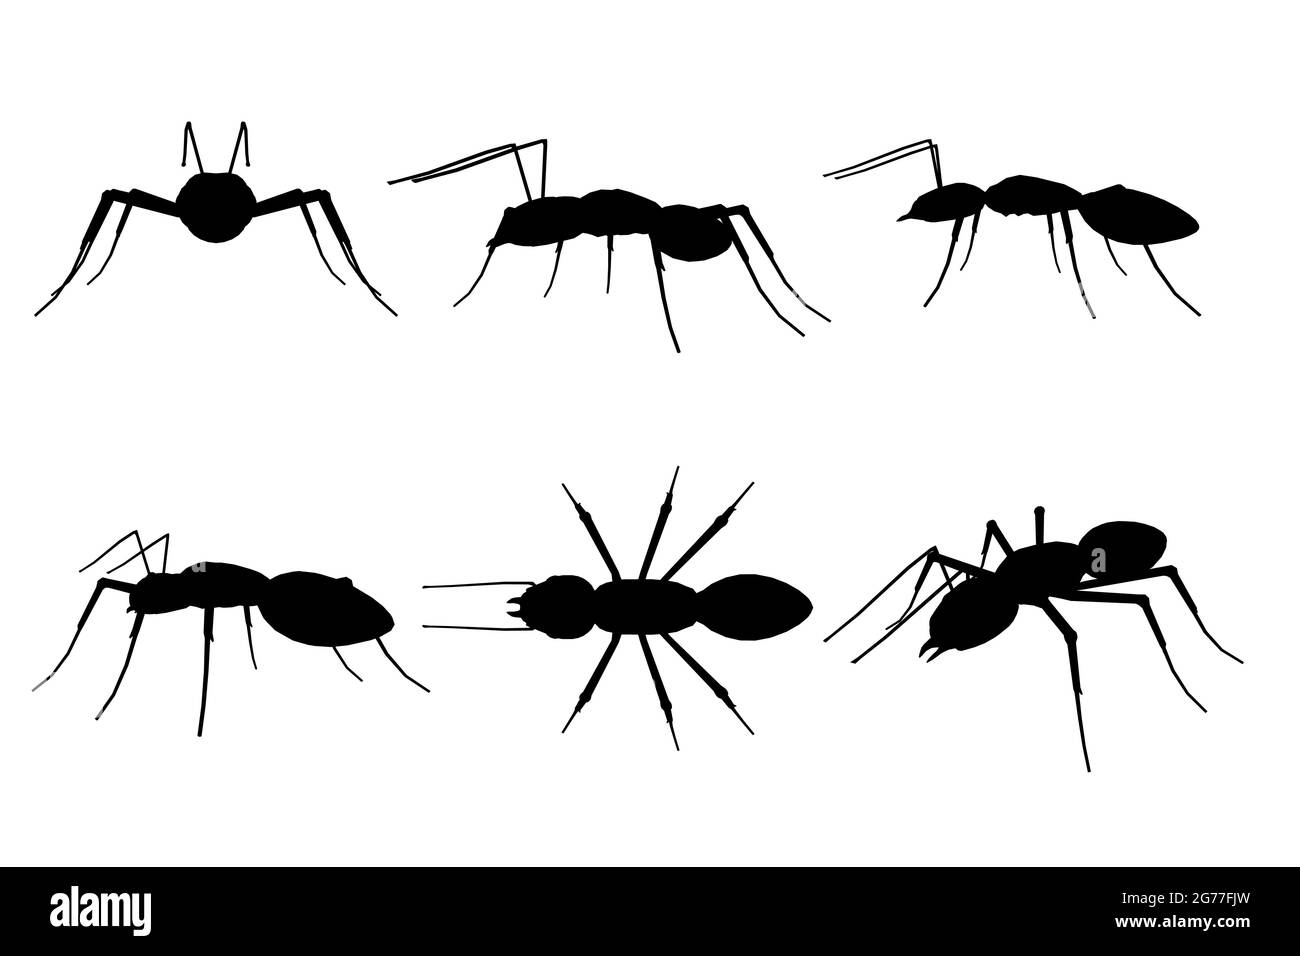 Set mit Umrissen von Ameise in verschiedenen Positionen isoliert auf weißem Hintergrund. Vektorgrafik. Stock Vektor